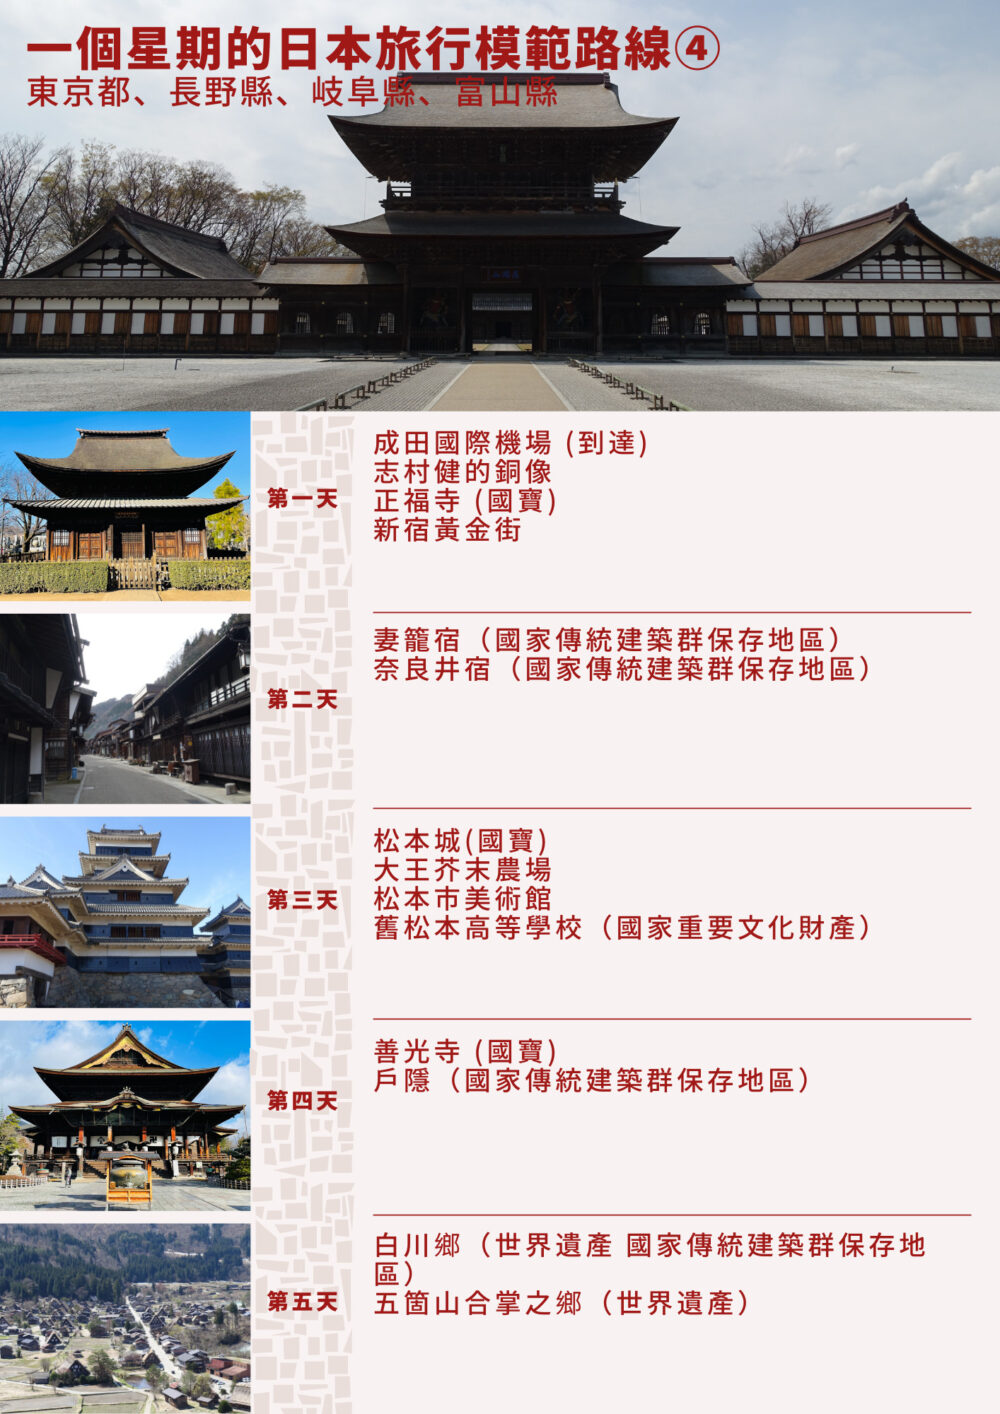 一個星期的日本旅行模範路線④ -東京都、長野縣、岐阜縣、富山縣的周遊路線